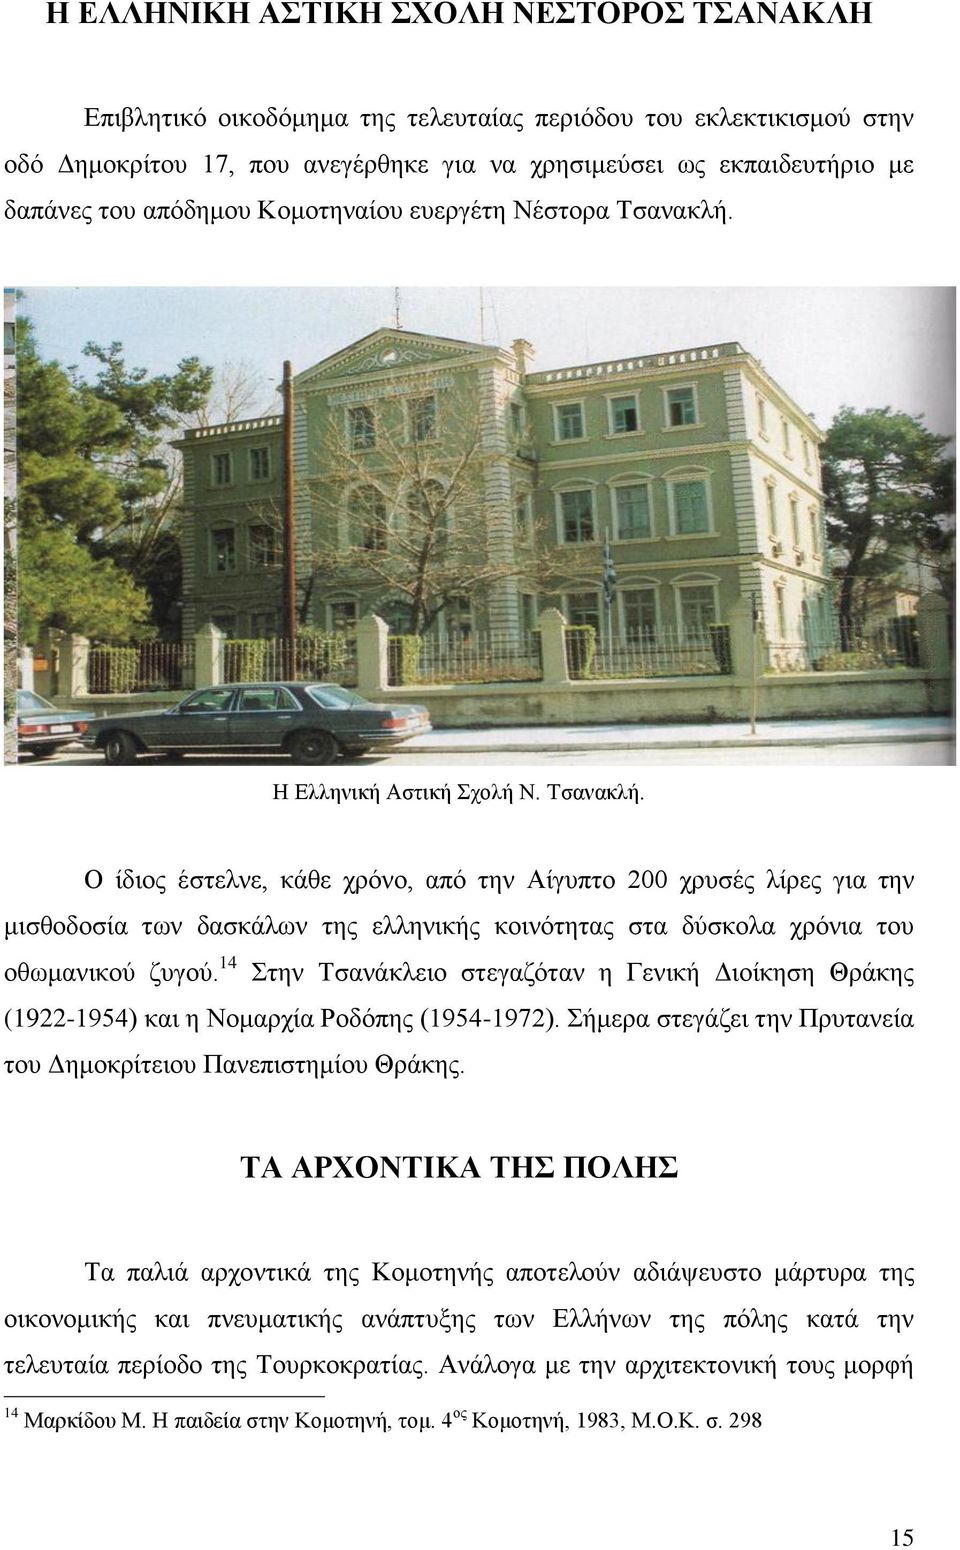 Η Ελληνική Αστική Σχολή Ν. Τσανακλή. Ο ίδιος έστελνε, κάθε χρόνο, από την Αίγυπτο 200 χρυσές λίρες για την μισθοδοσία των δασκάλων της ελληνικής κοινότητας στα δύσκολα χρόνια του οθωμανικού ζυγού.